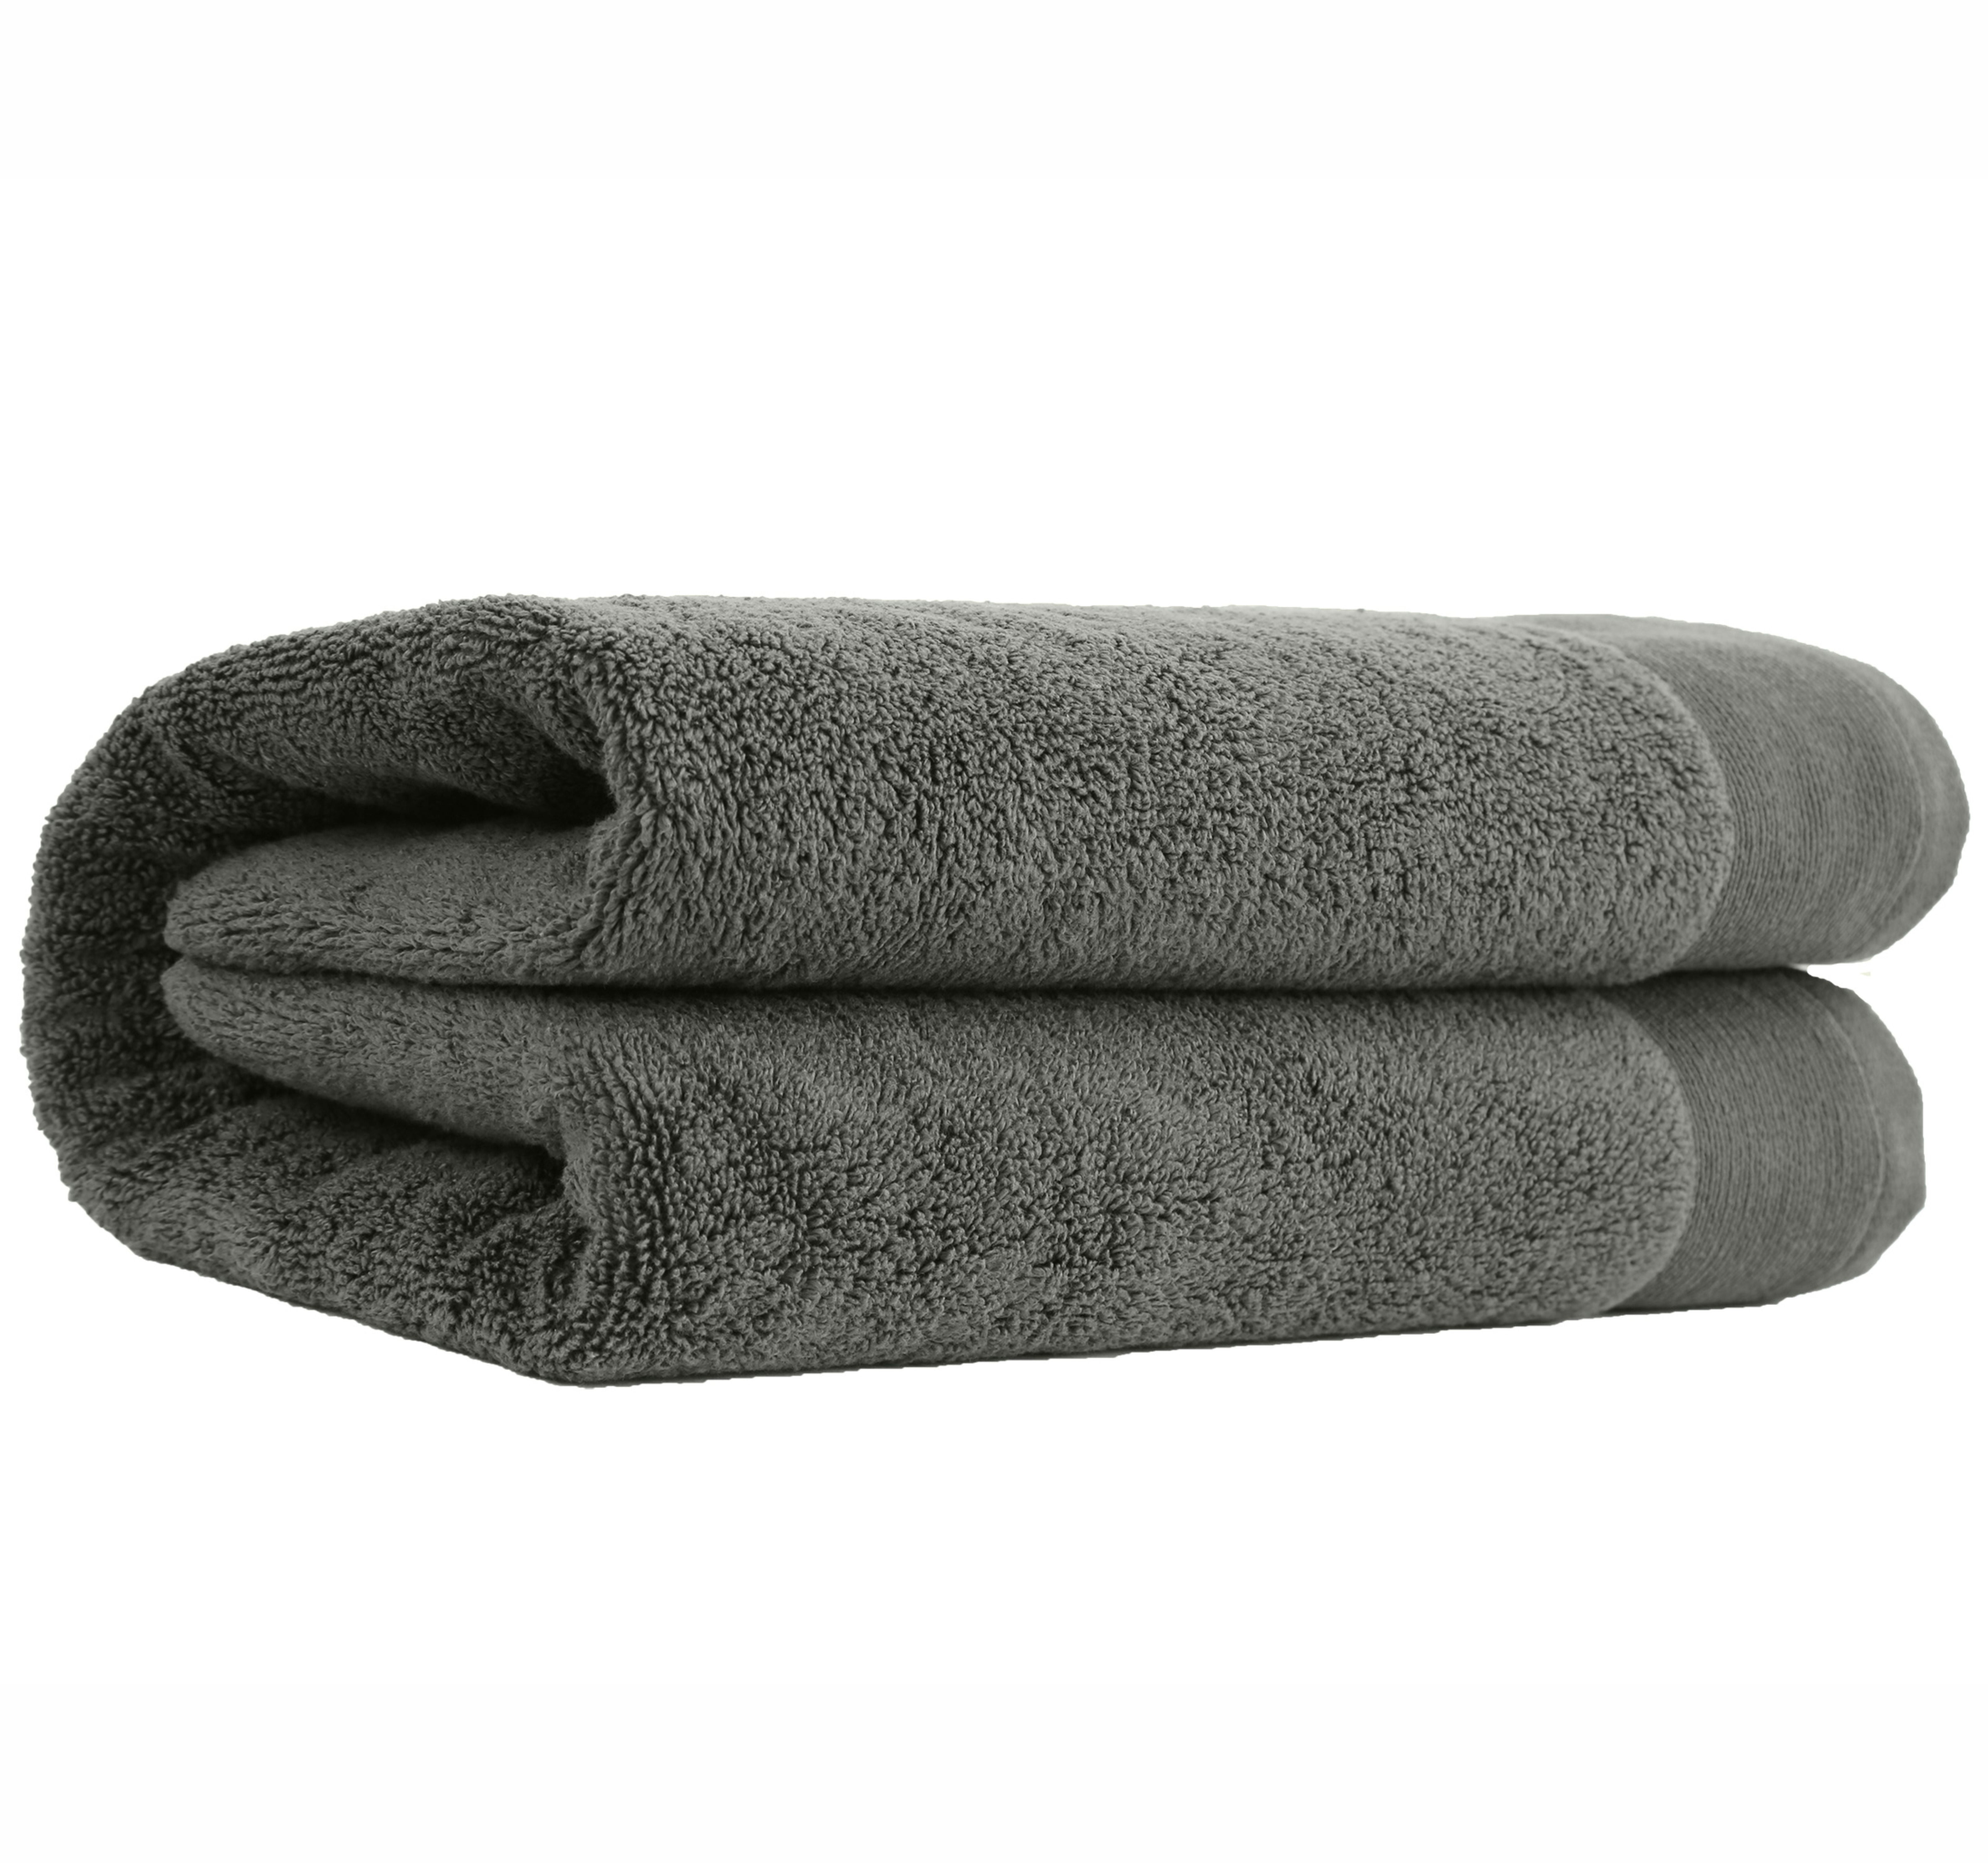 Extra Large Bath Towel, Natural Big Bath Sheet, Set of Towels